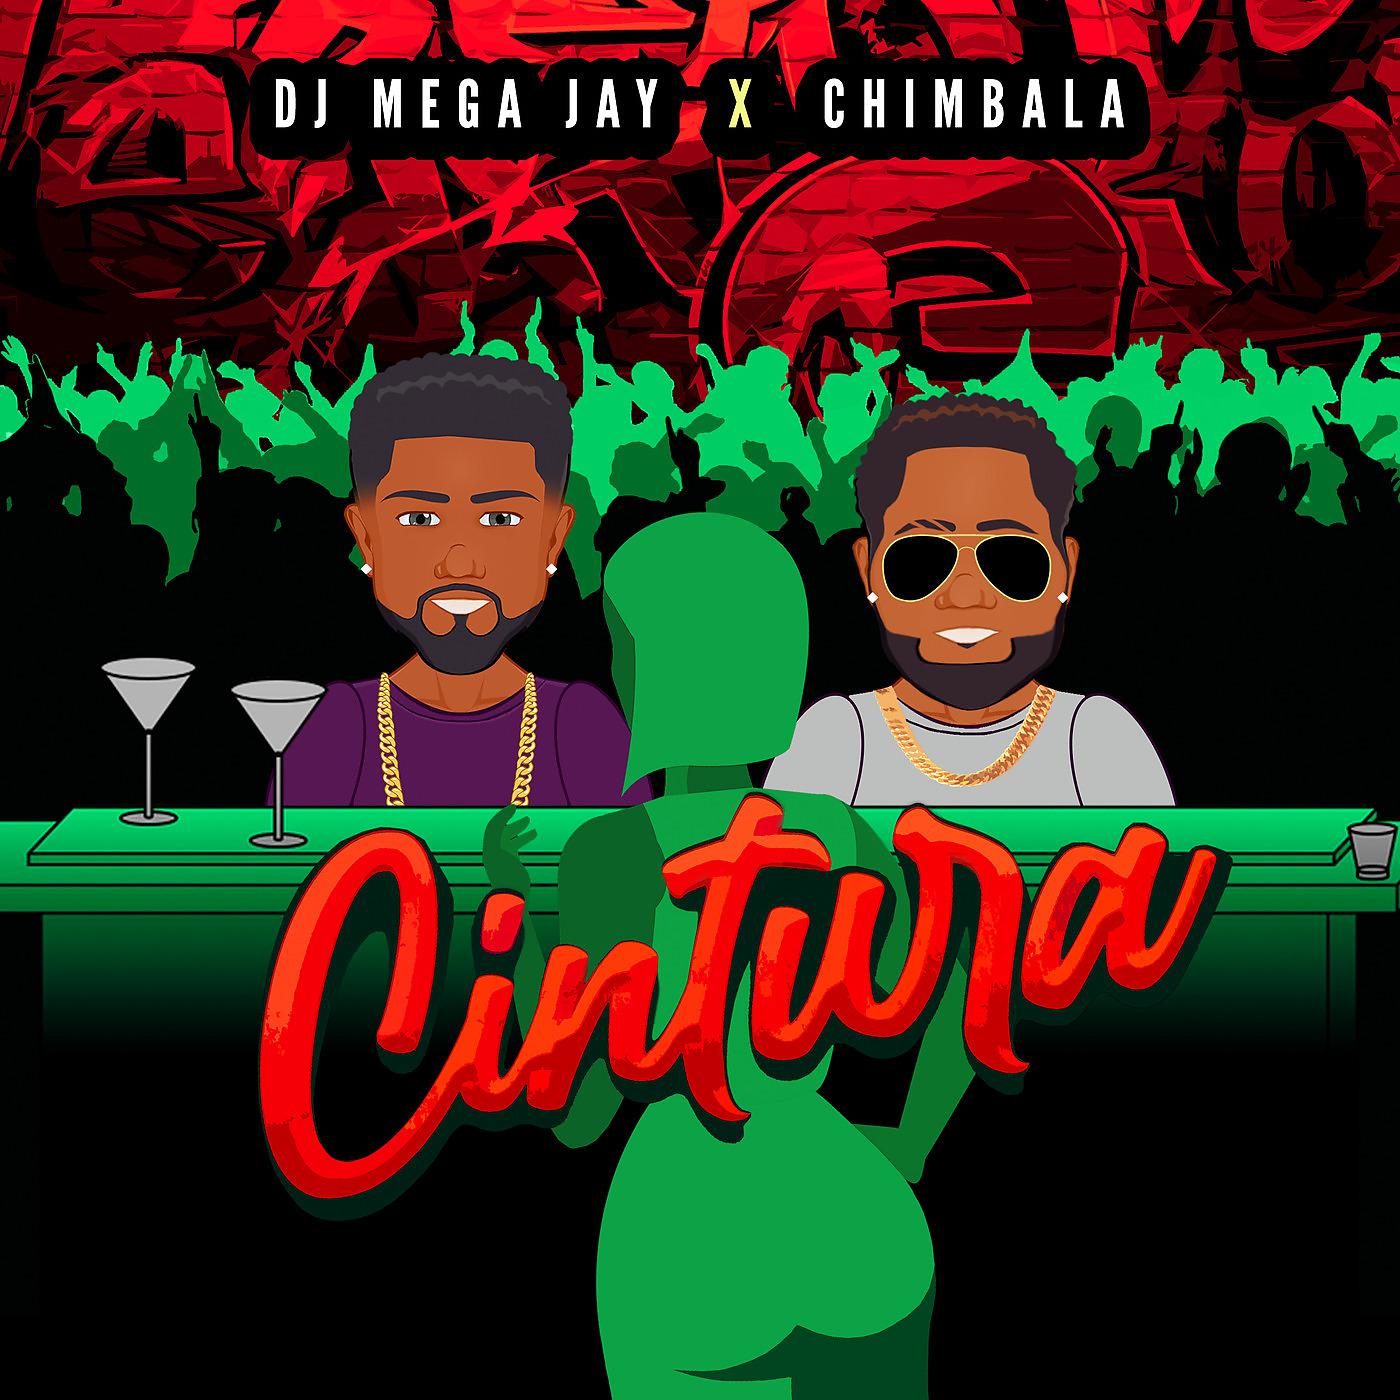 Постер альбома Cintura